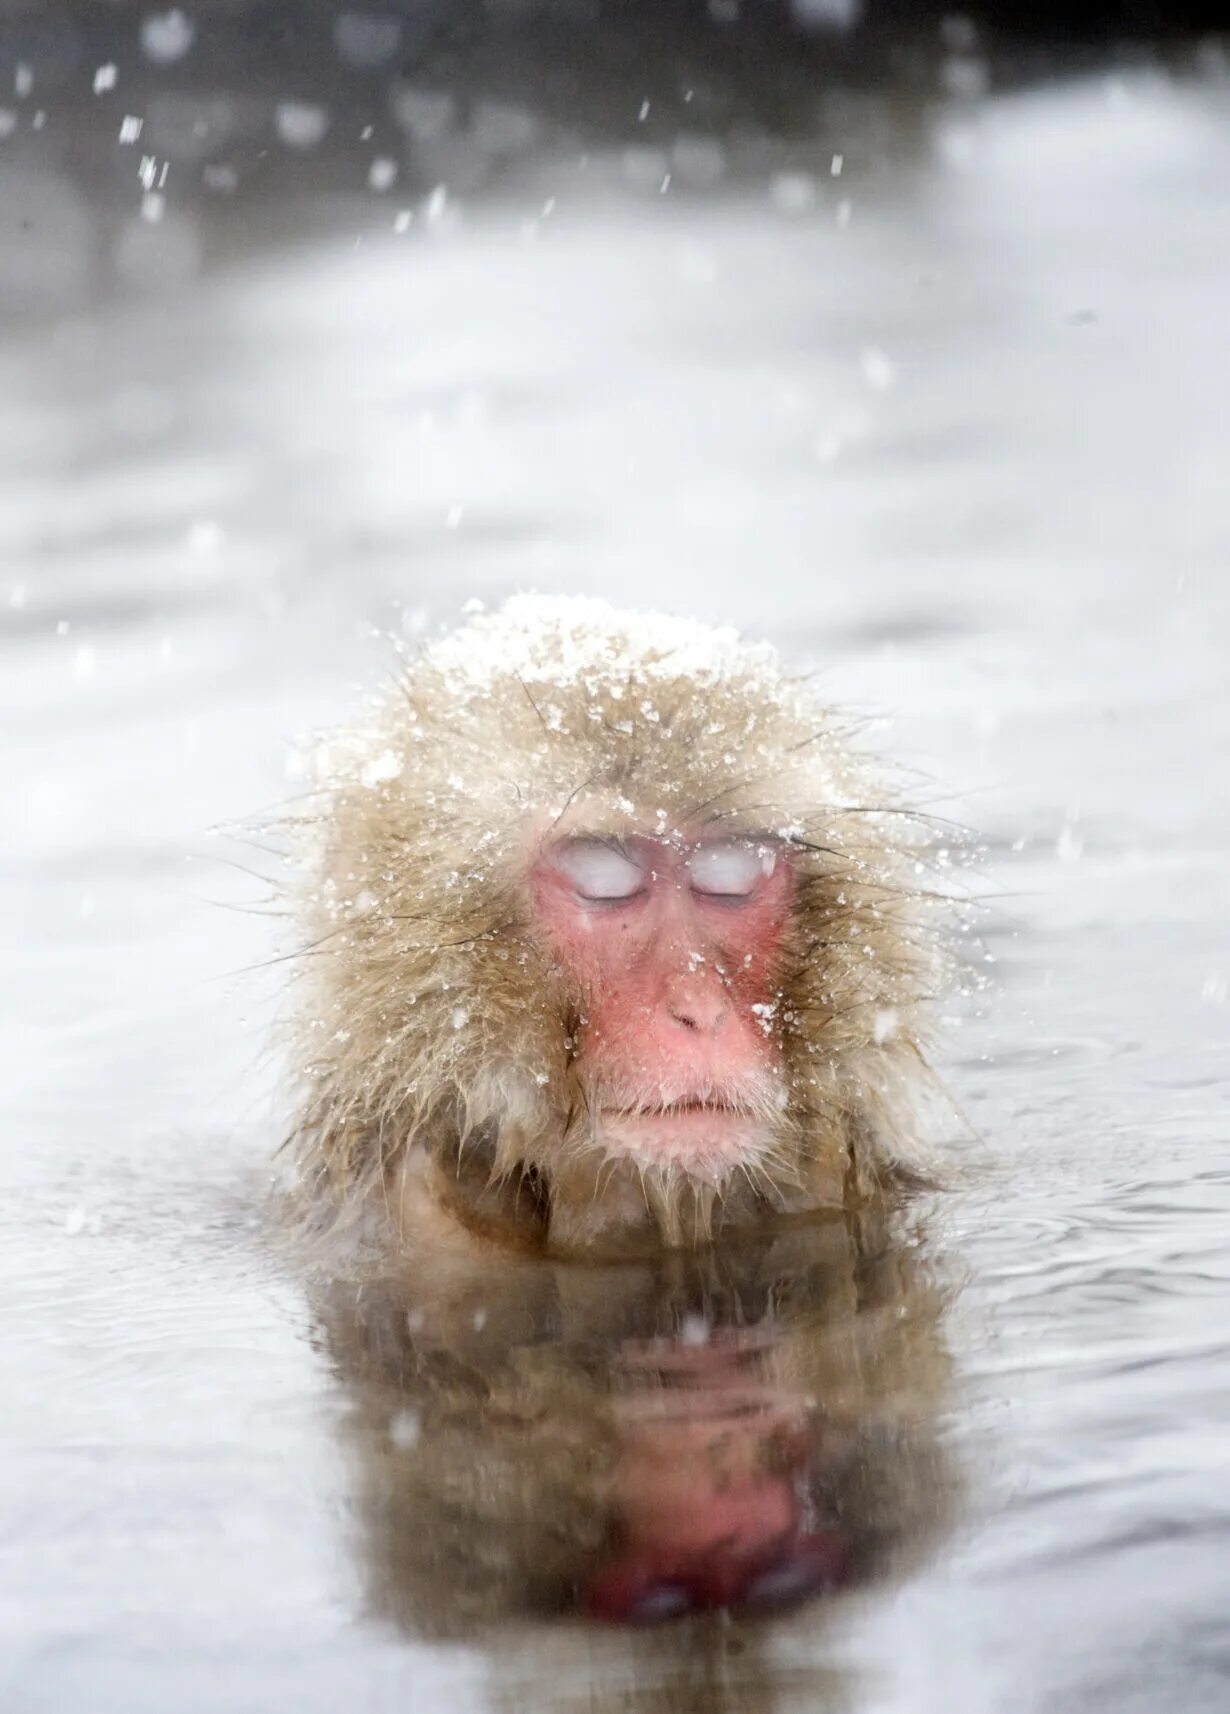 Японские макаки. Японские макаки в горячих источниках зимой. Японский макак в горячем источнике. Обезьянки в горячем источнике. Обезьяна в теплой воде хоккей